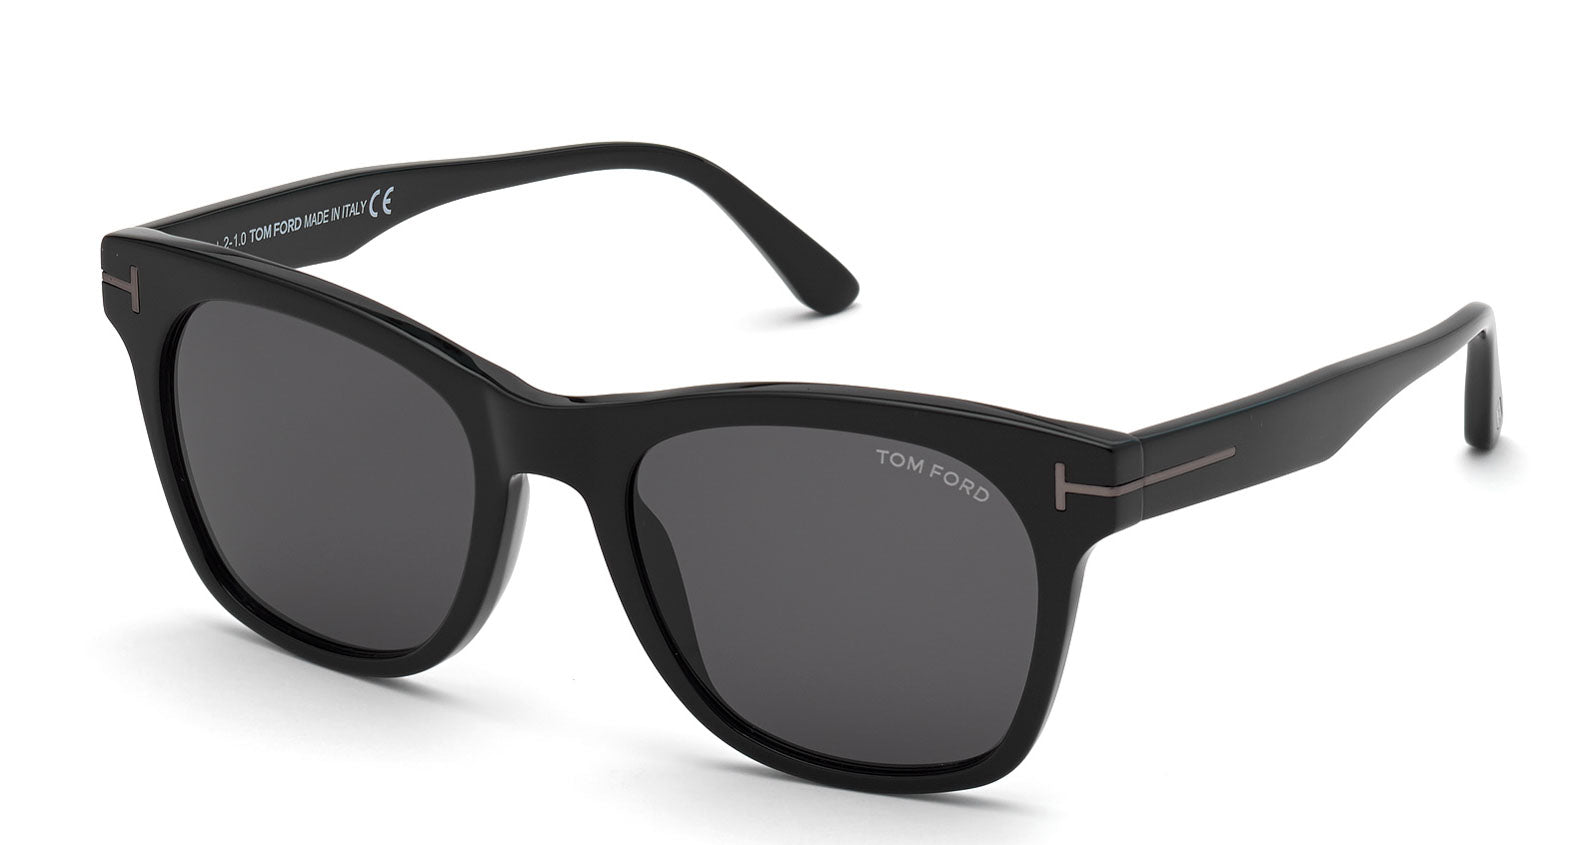 Tom Ford Brooklyn TF833 Sunglasses | Fashion Eyewear